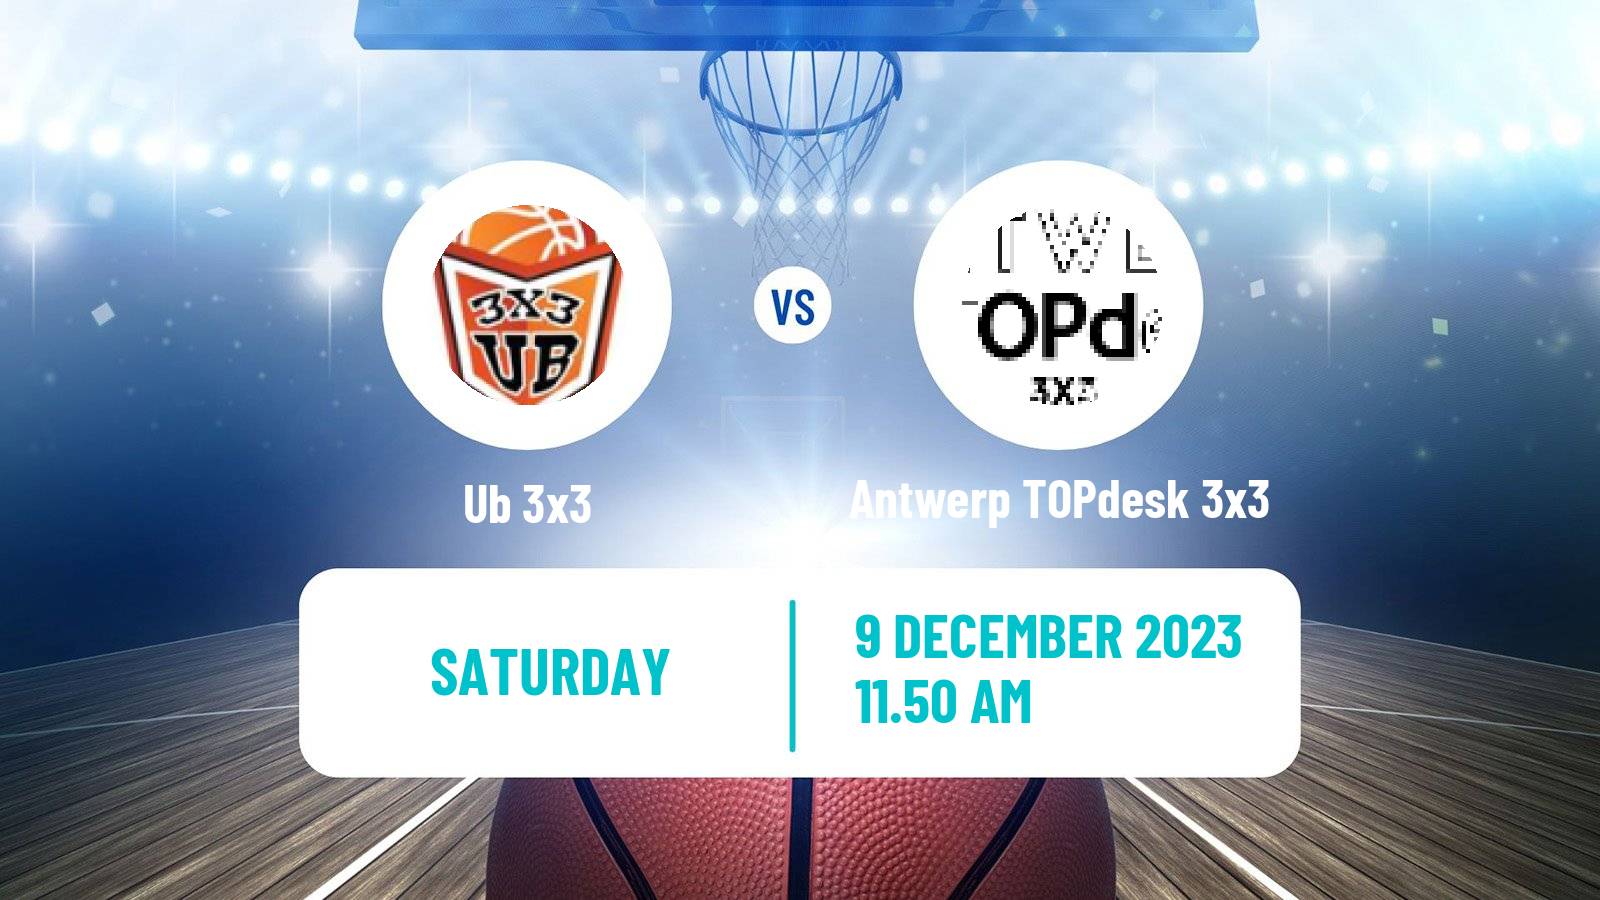 Basketball World Tour Final 3x3 Ub 3x3 - Antwerp TOPdesk 3x3